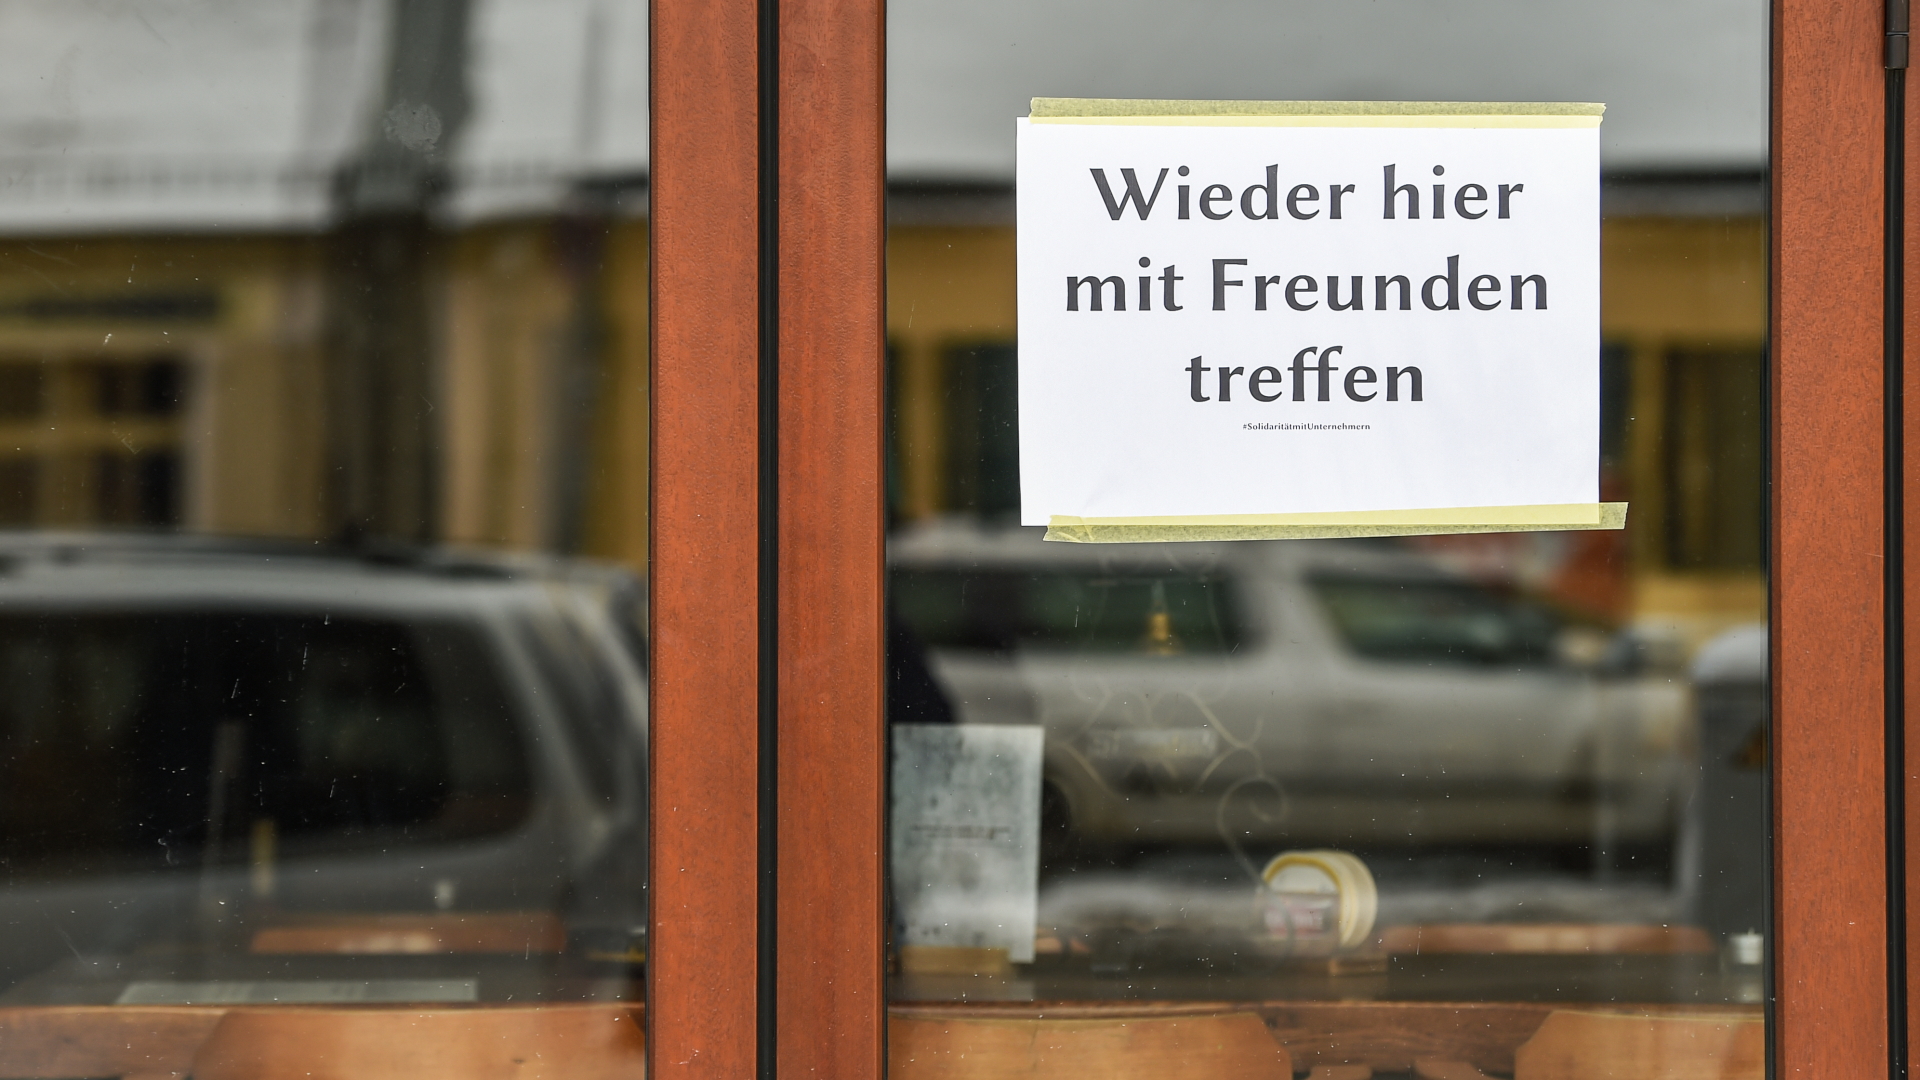 Am Fenster einer Bar in Friedrichshagen hängt ein Schild mit der Aufschrift "Wieder hier mit Freunden treffen"